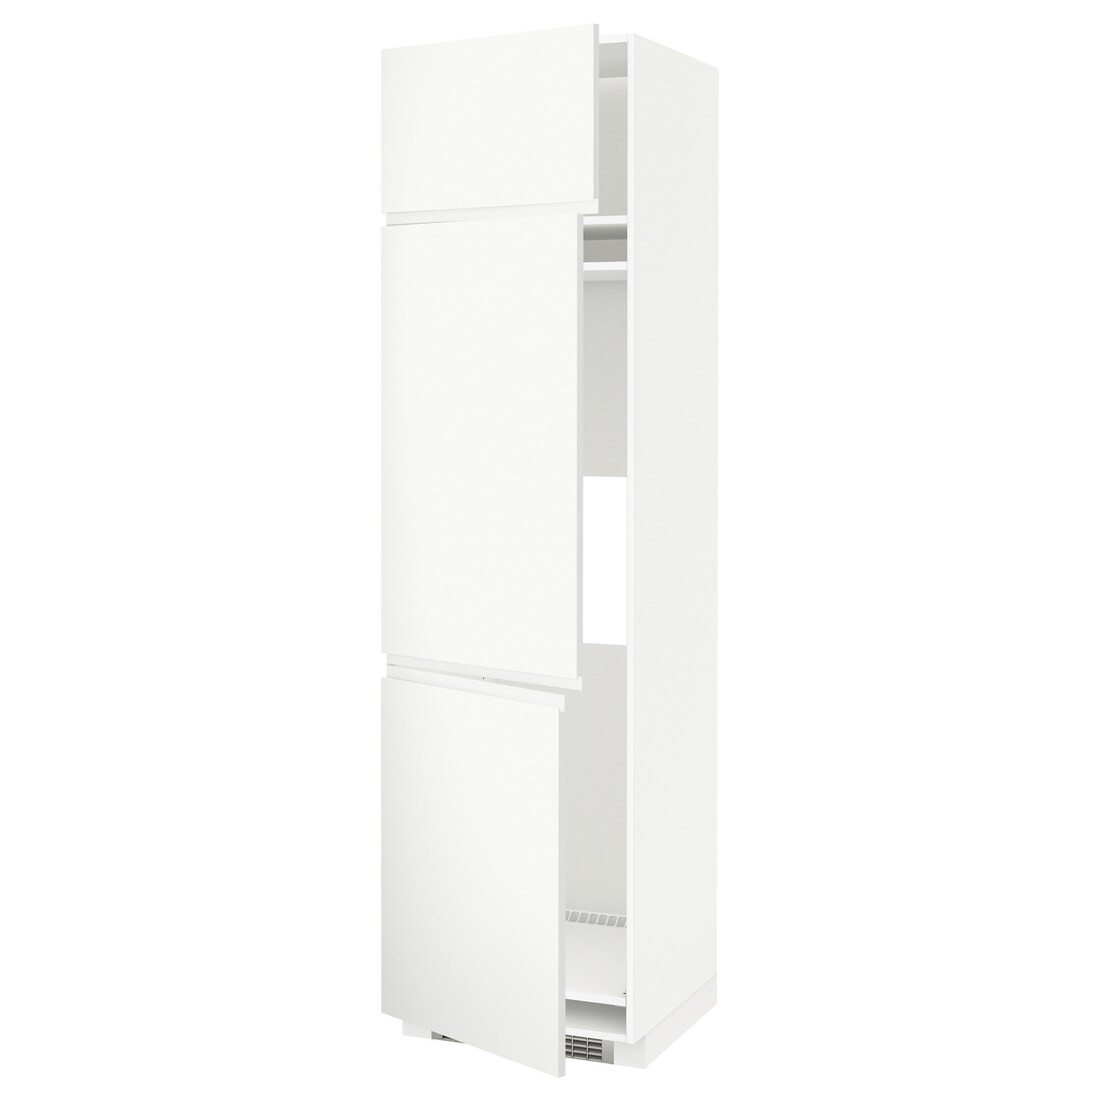 IKEA METOD МЕТОД Высокий шкаф для холодильника / морозильника / 3 дверцы, белый / Voxtorp матовый белый, 60x60x220 см 89457425 894.574.25